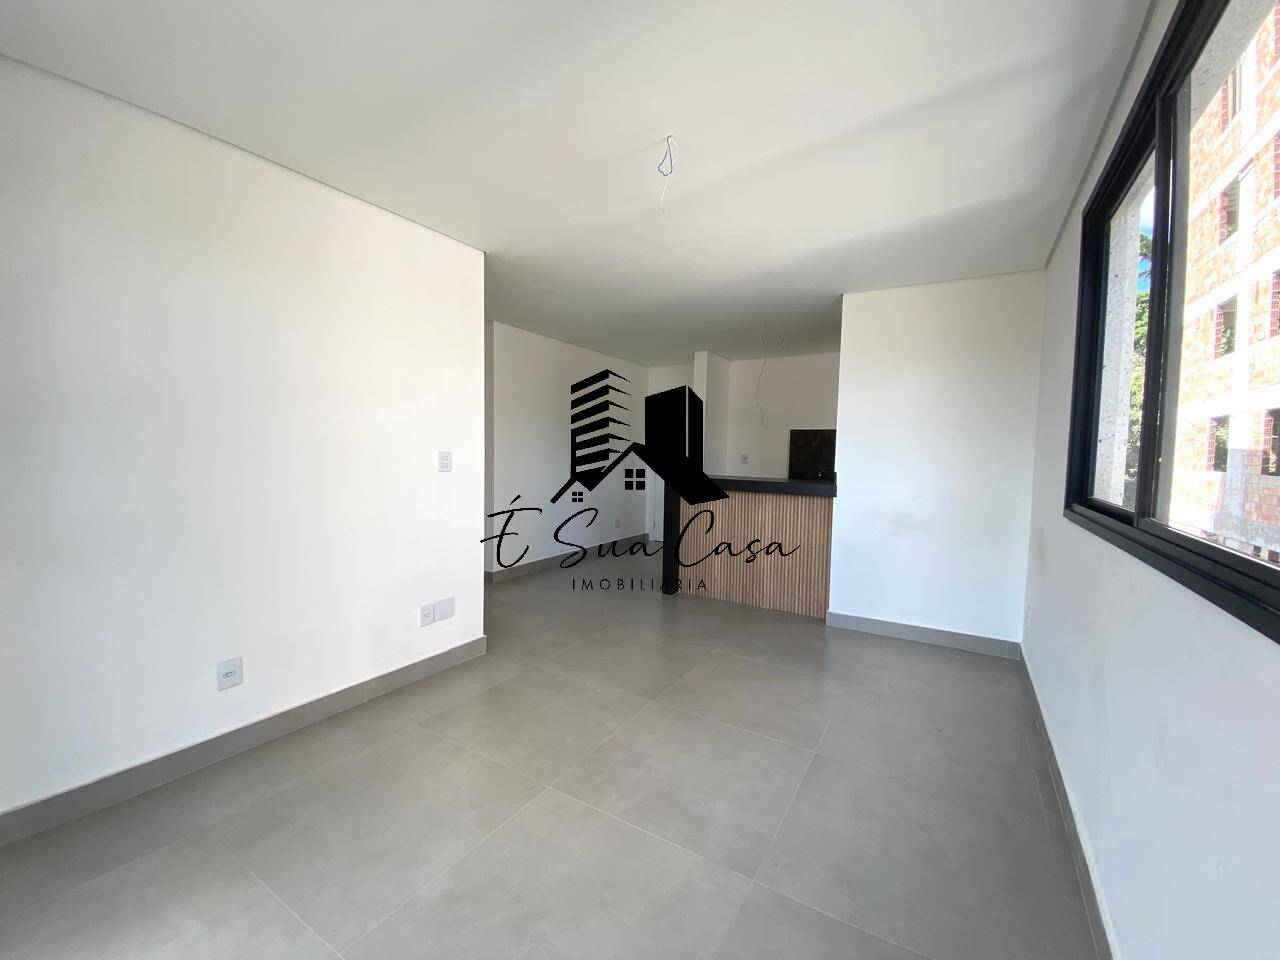 Apartamento, 2 quartos, 62 m² - Foto 2